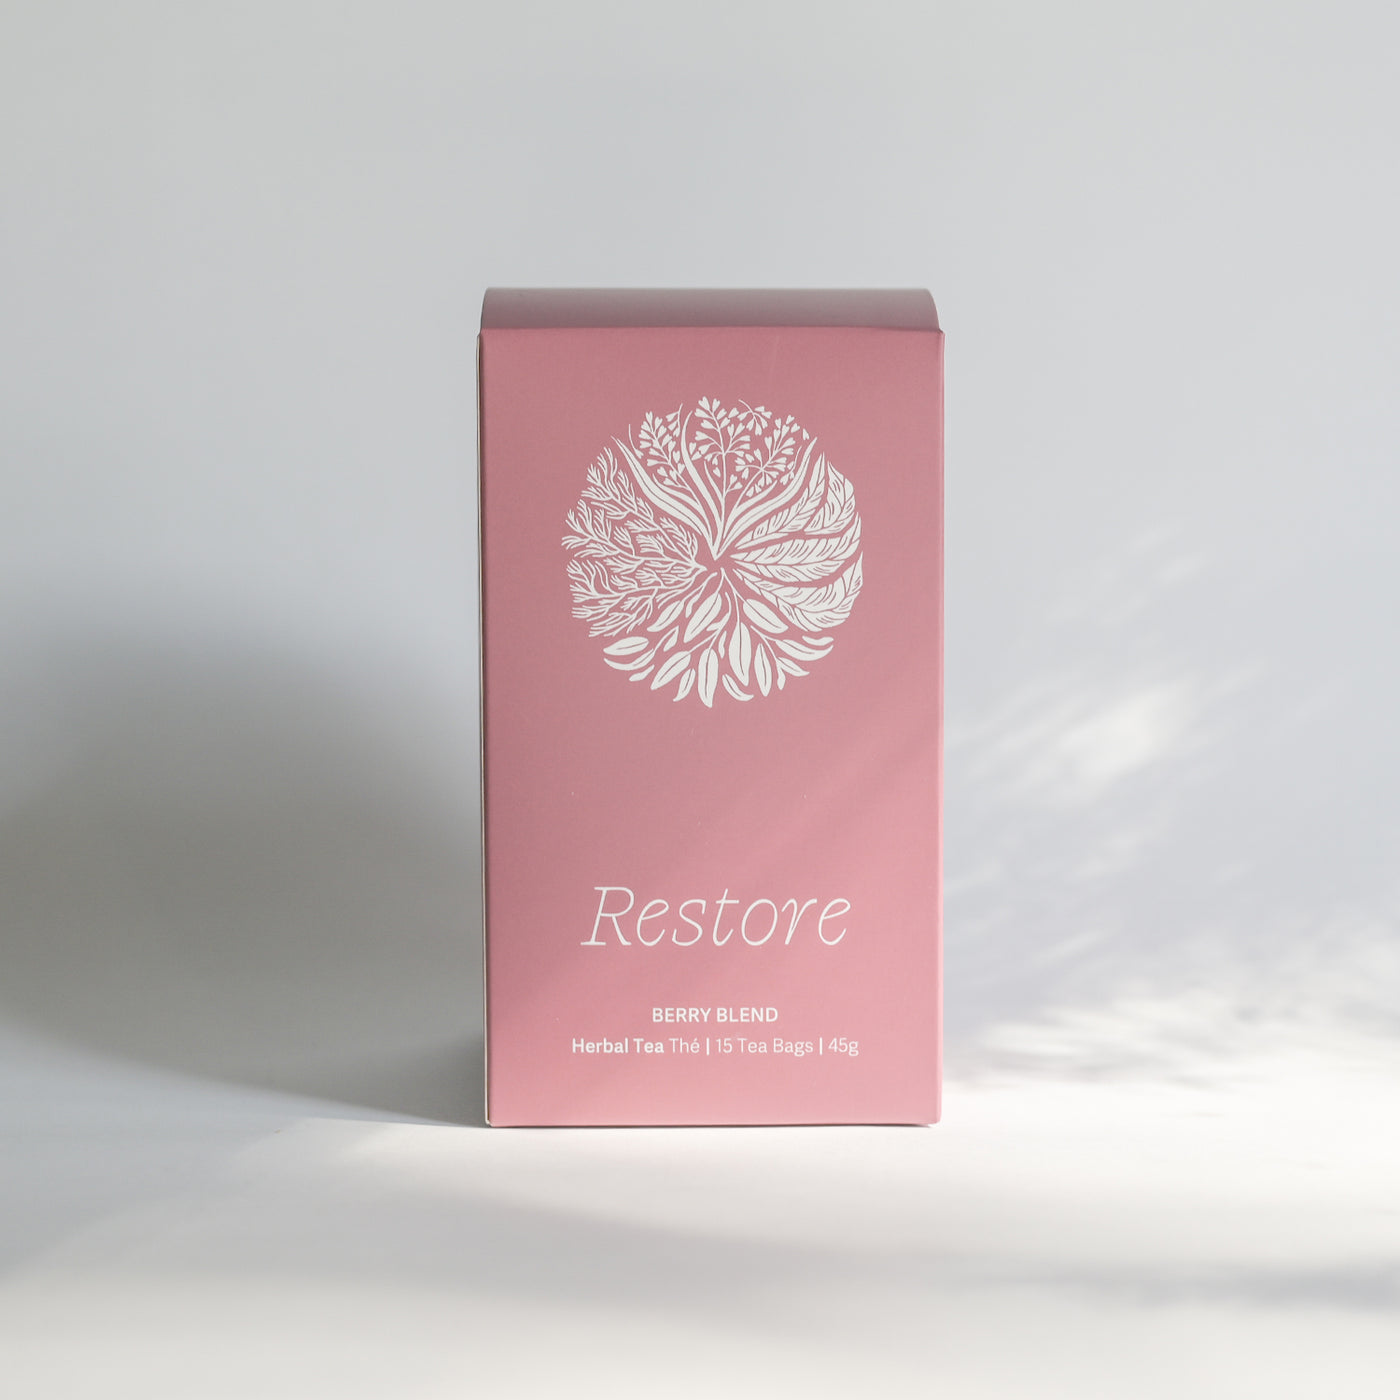 Restore Herbal Tea - Tea Bag Box